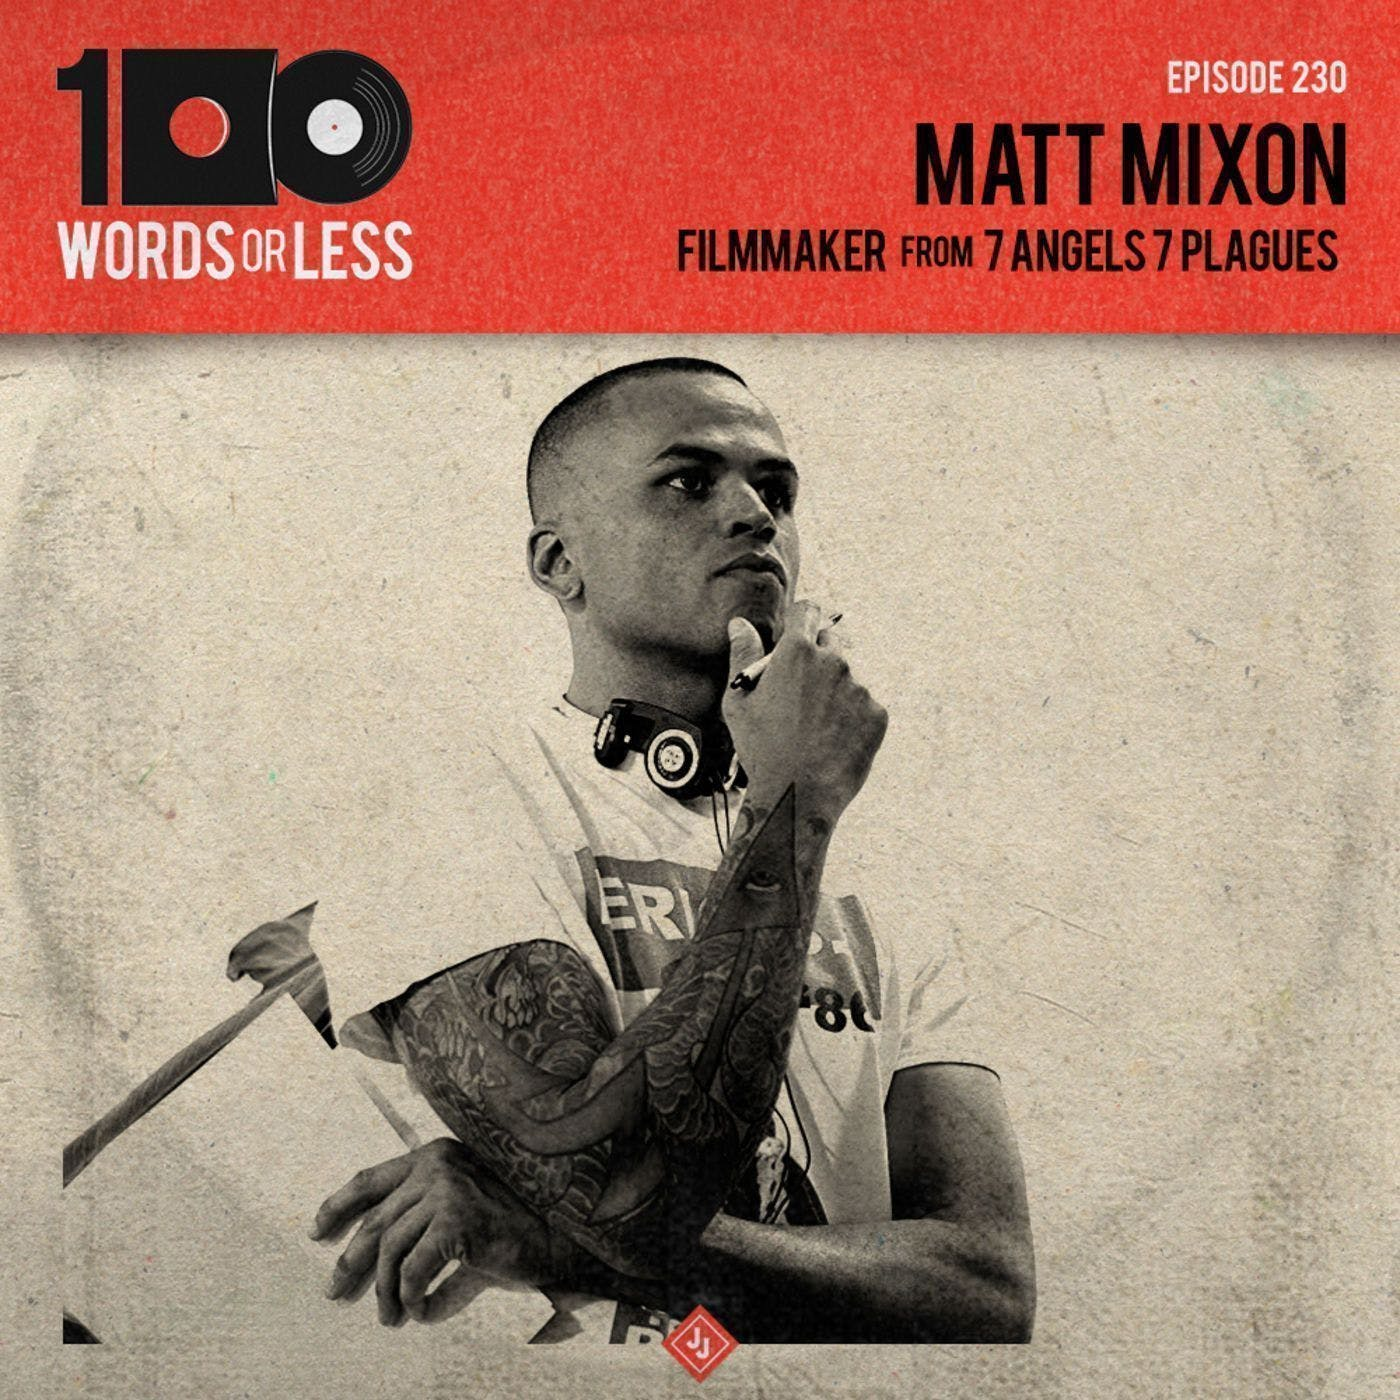 Matt Mixon, filmmaker/7 Angels & 7 Plagues